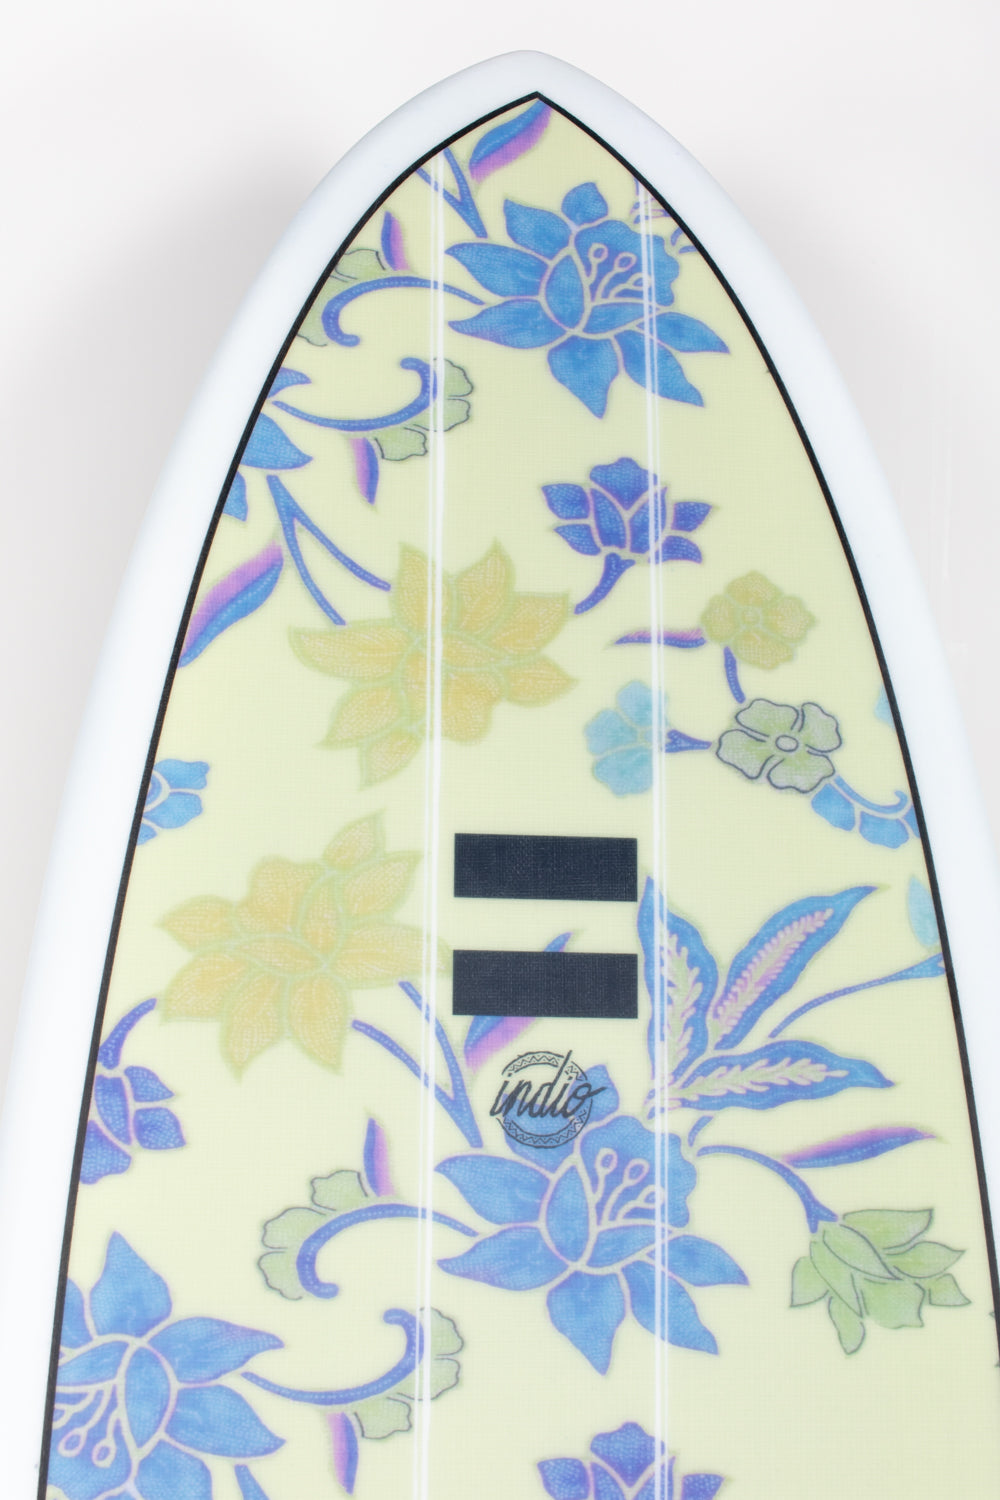 
                  
                    Pukas Surf Shop - Indio Endurance - THE EGG Flowers - 7´6 x 23 x 3 - 60L
                  
                